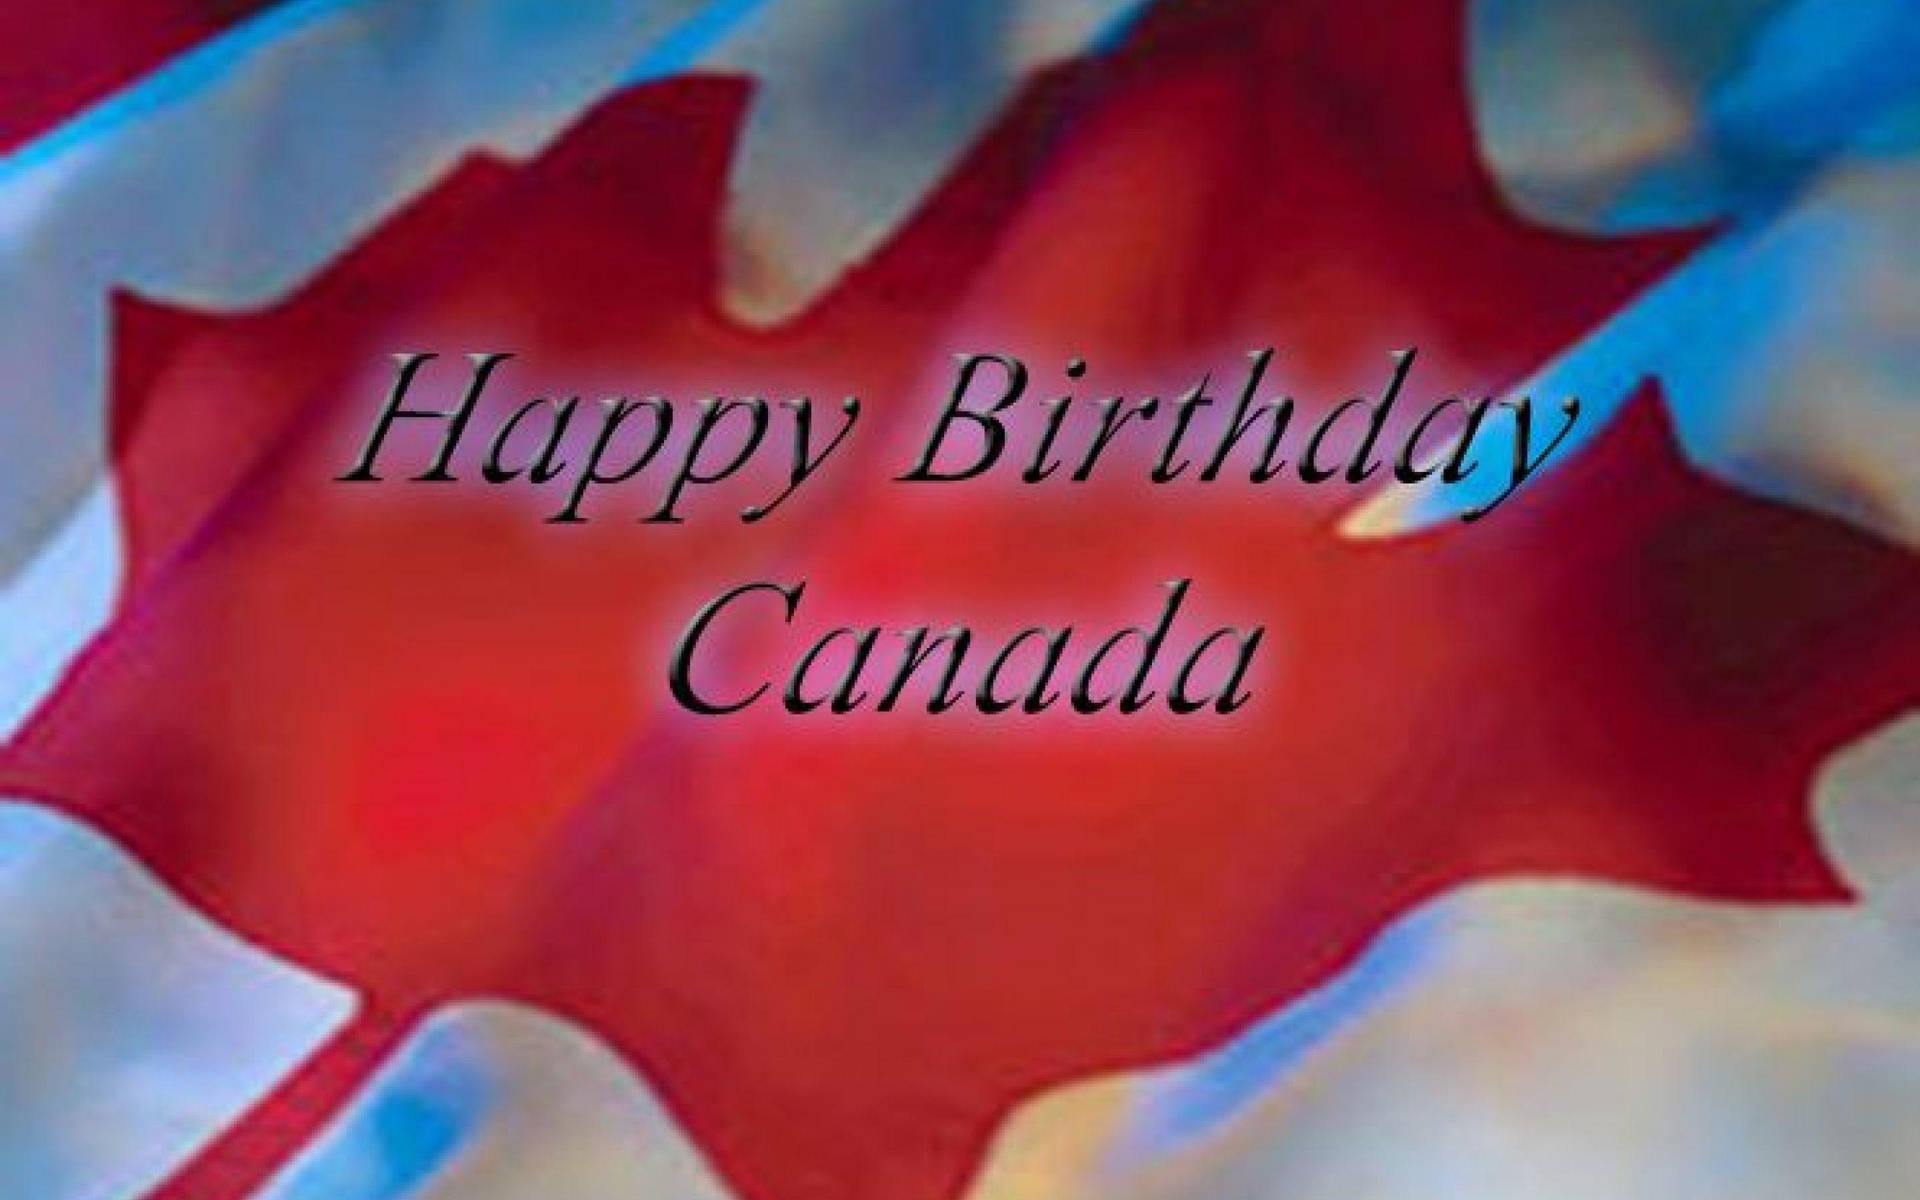 Canada Birth Day Wallpaper